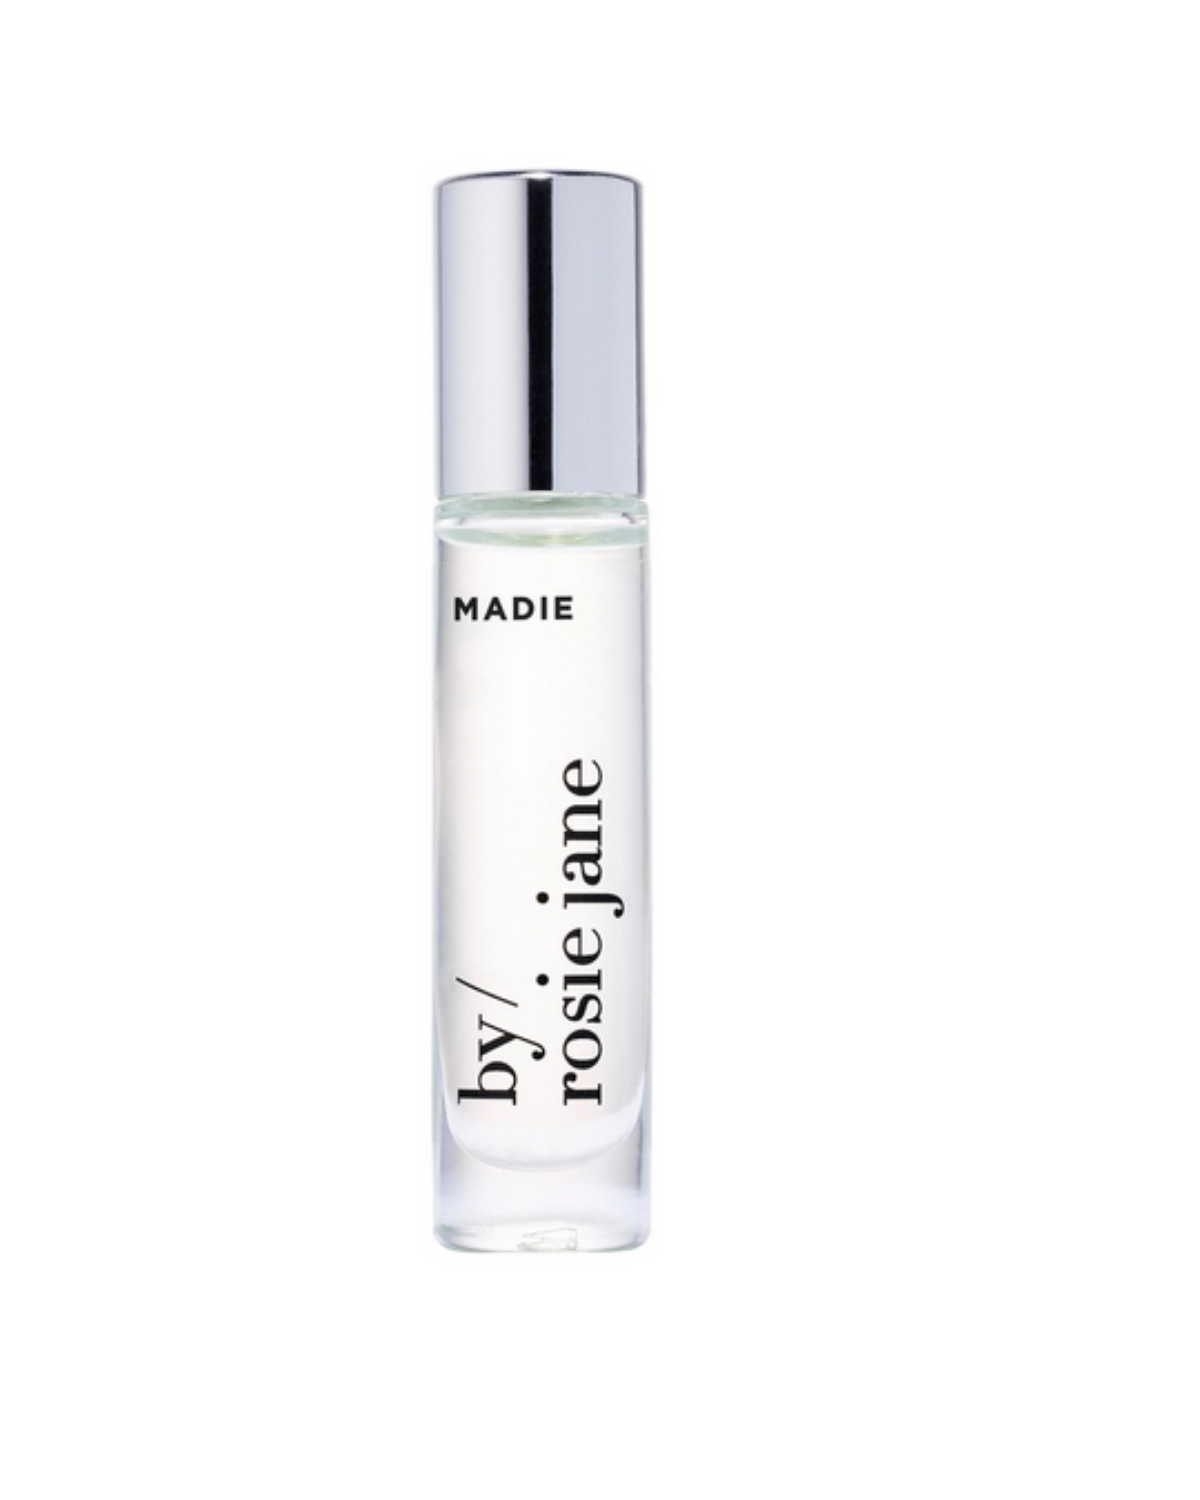 Madie Perfume Oil by Rosie Jane